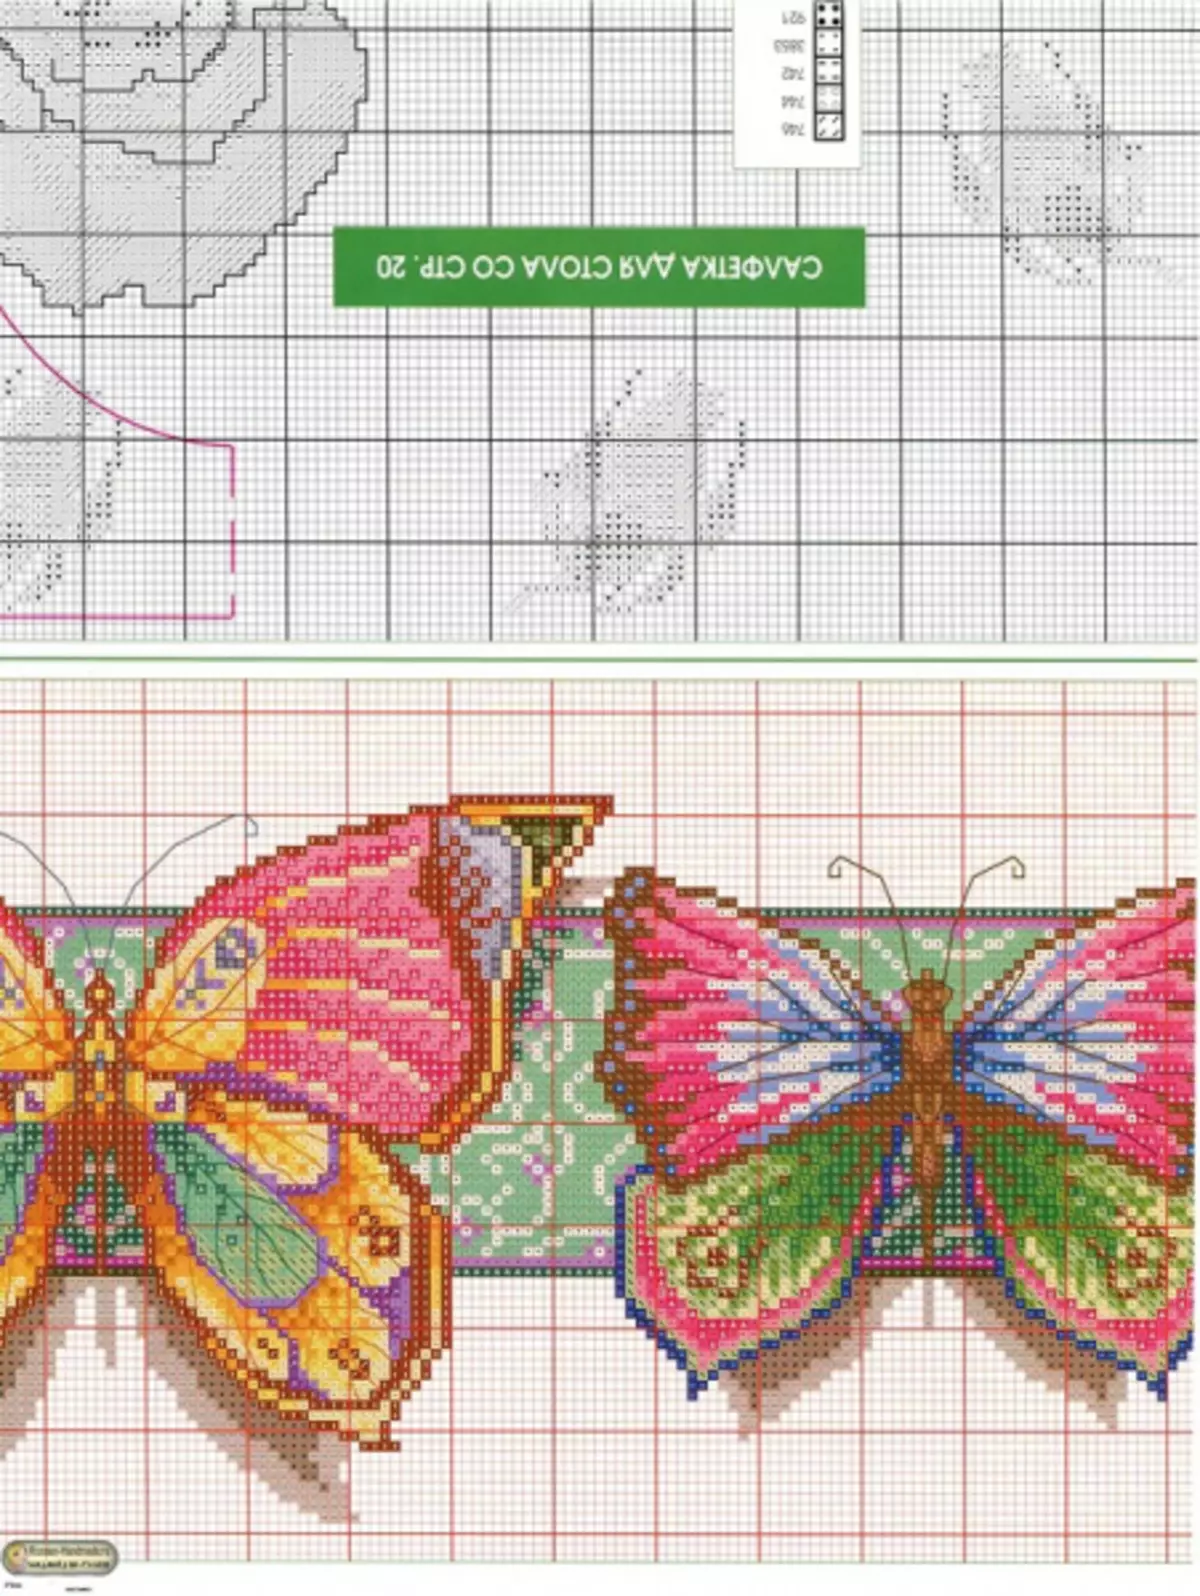 फुलपाखरे - क्रॉस कपाटी योजना